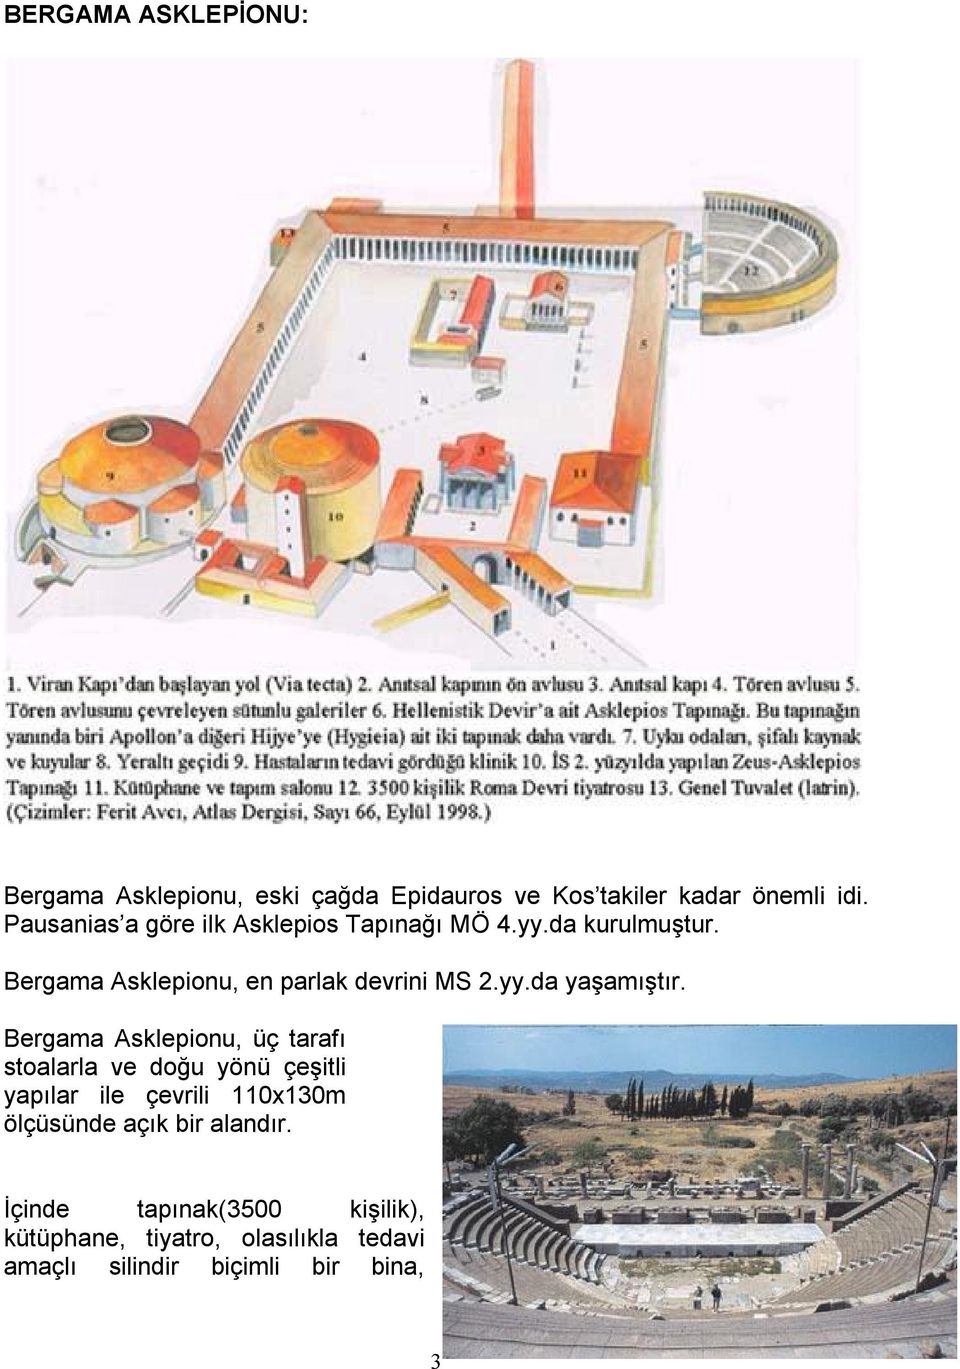 Bergama Asklepionu, üç tarafı stoalarla ve doğu yönü çeşitli yapılar ile çevrili 110x130m ölçüsünde açık bir